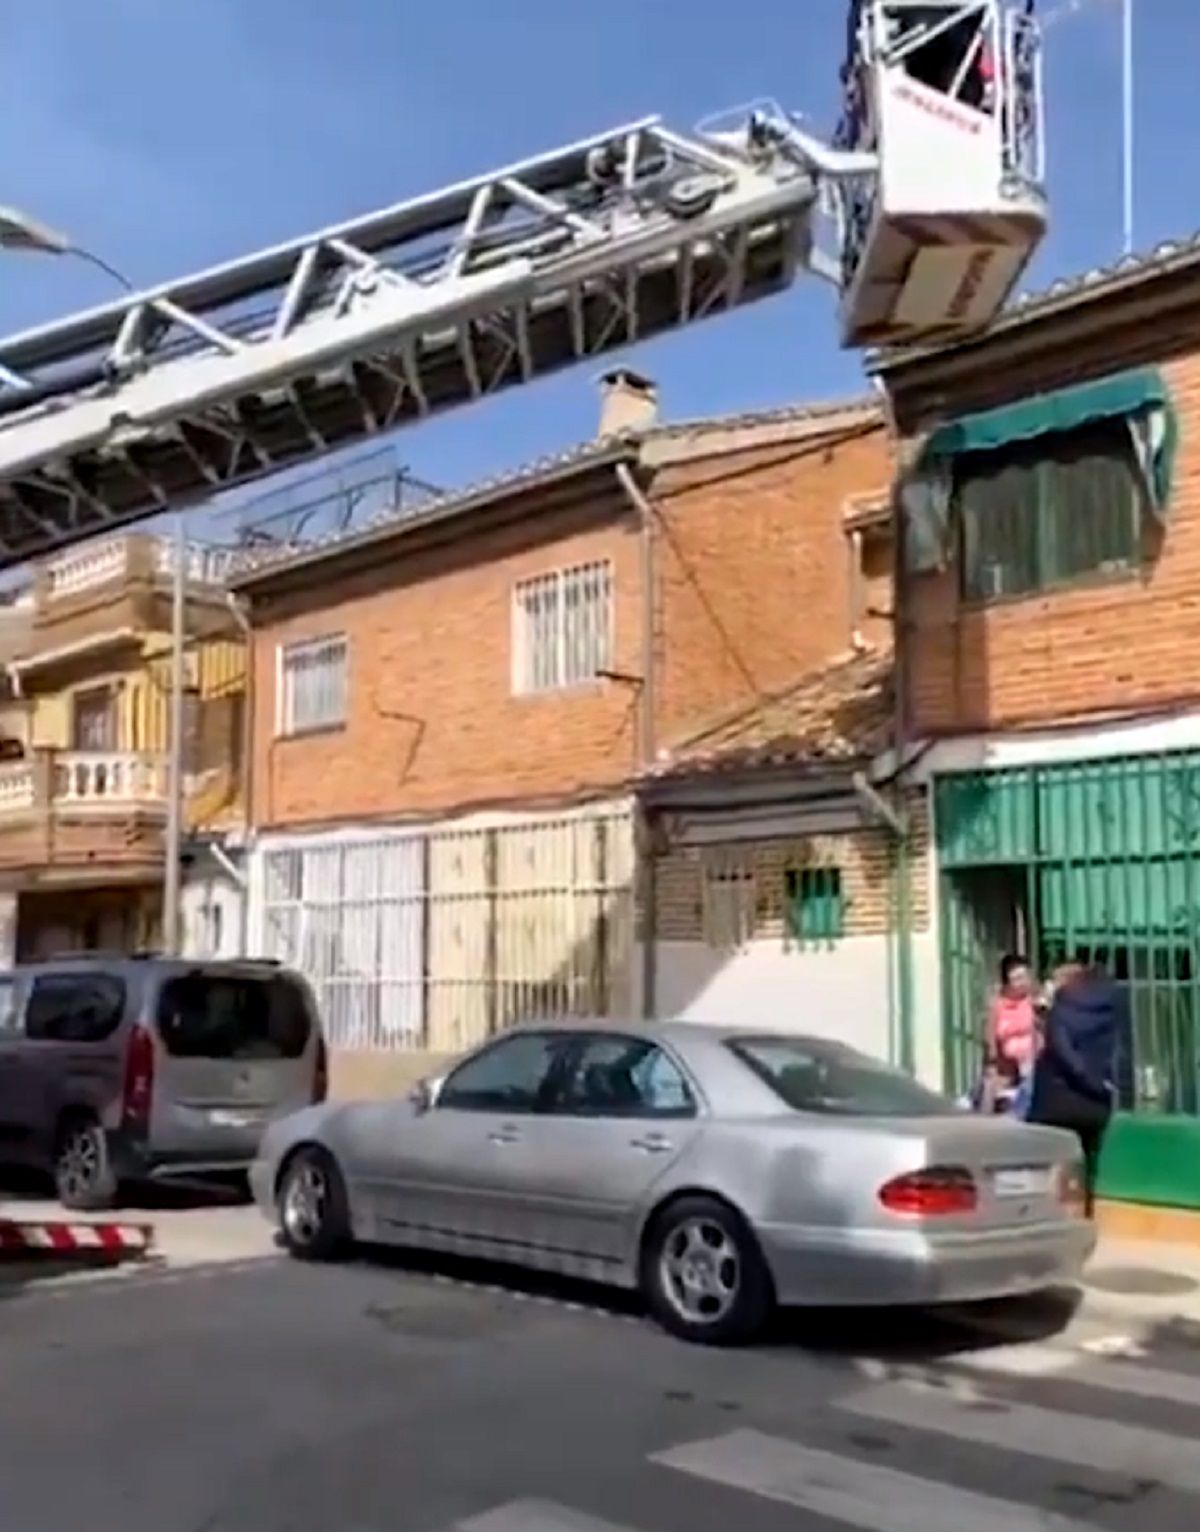 Persecució policial en La Paz / Antena 3